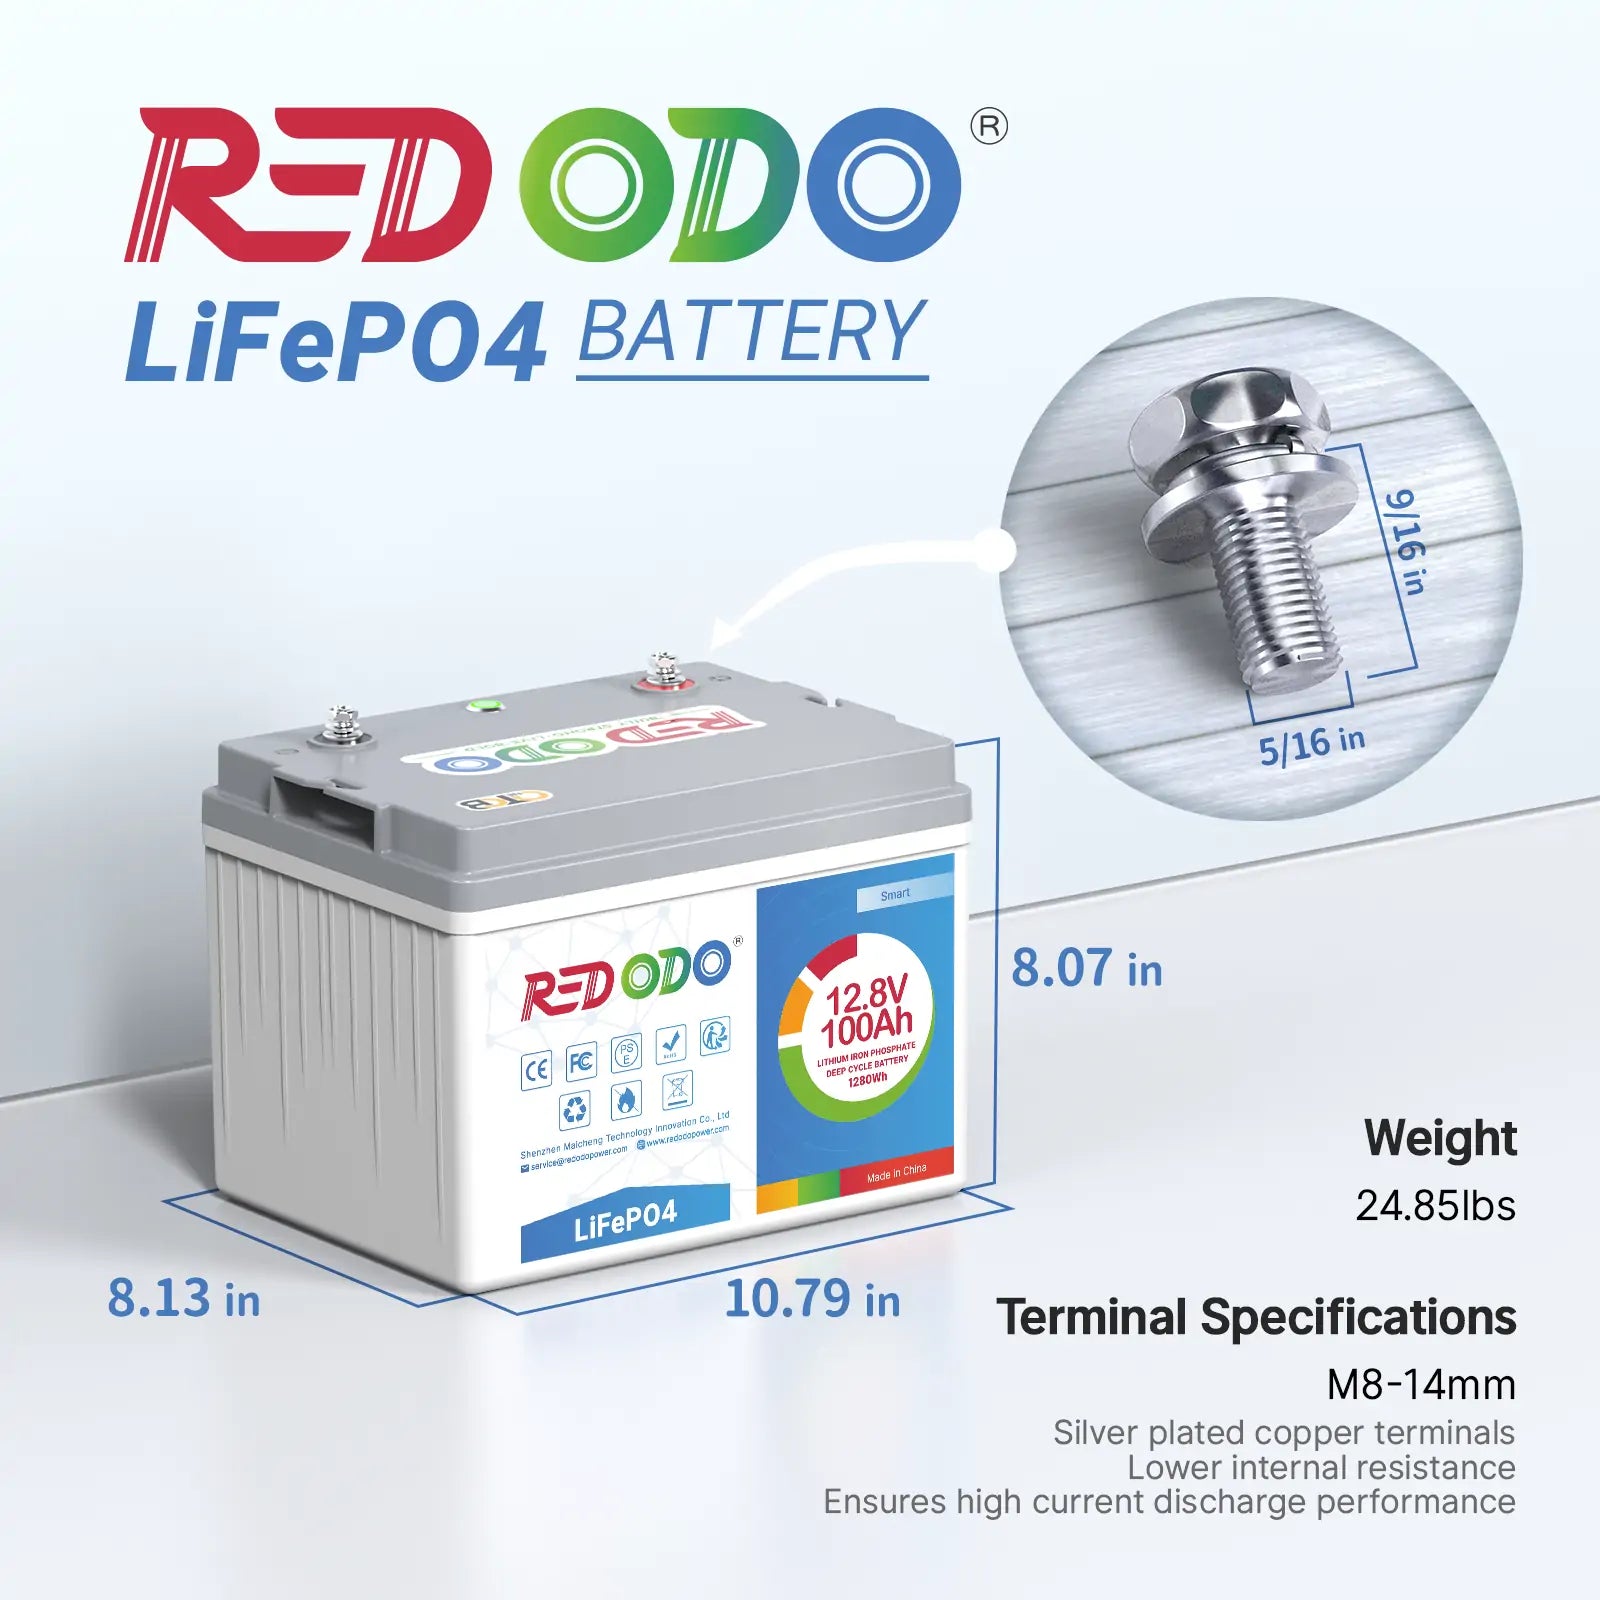 Redodo 12.8V 100ah lithium battery, best RV battery